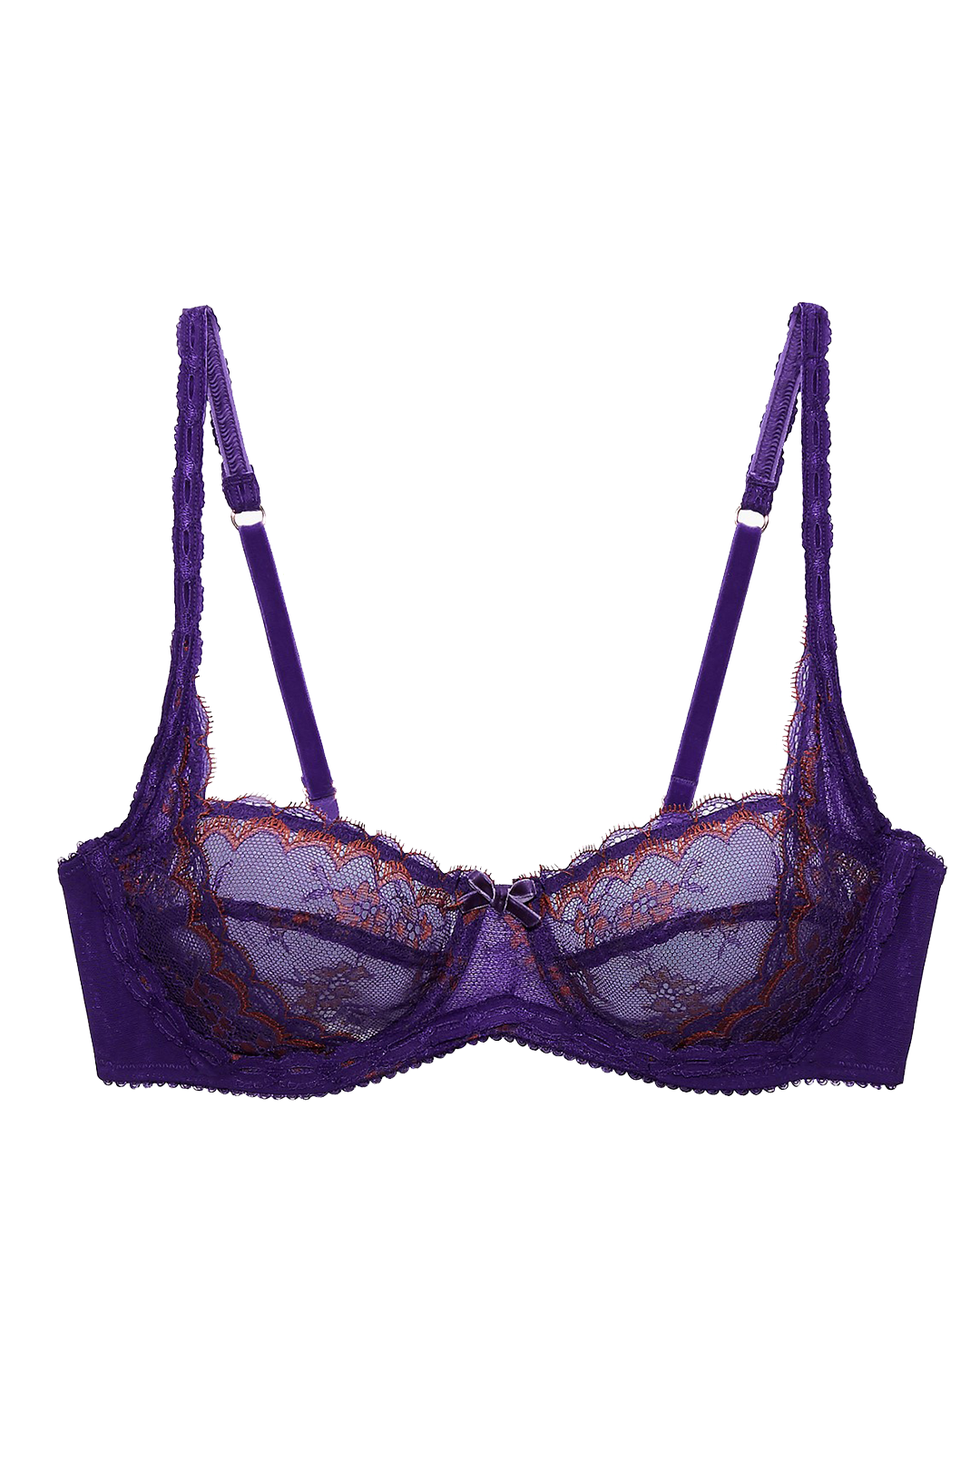 Rihanna Savage Fenty Women's Unlined Irridescent Bra Purple Size 38DDD  (38F) - $22 - From Jen